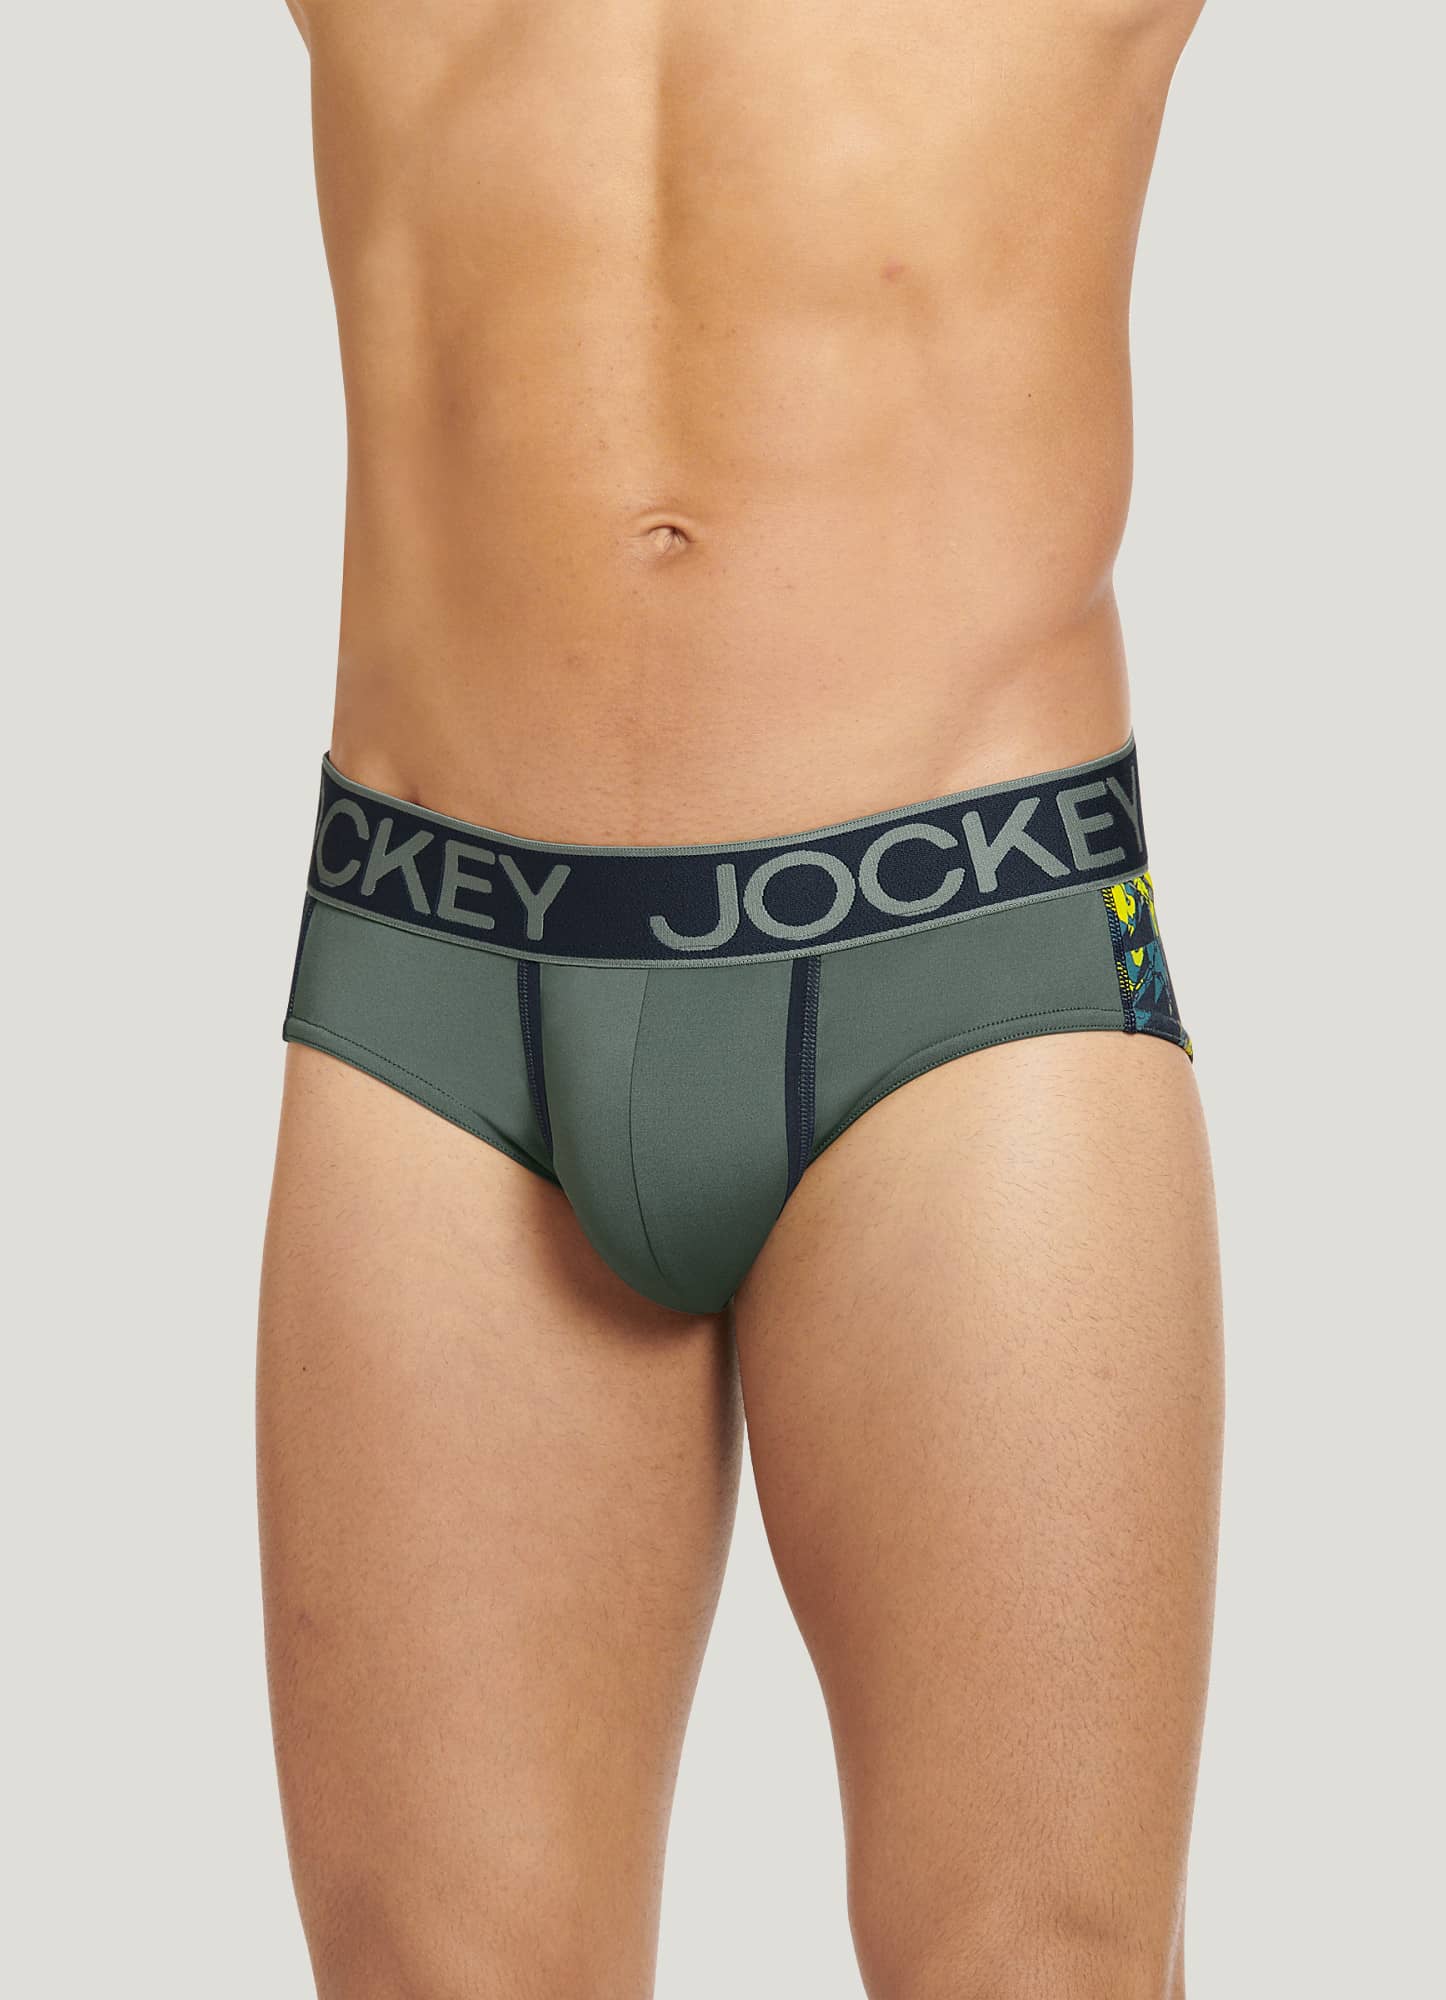 Jockey Official Site  Underwear, Activewear & Sleepwear